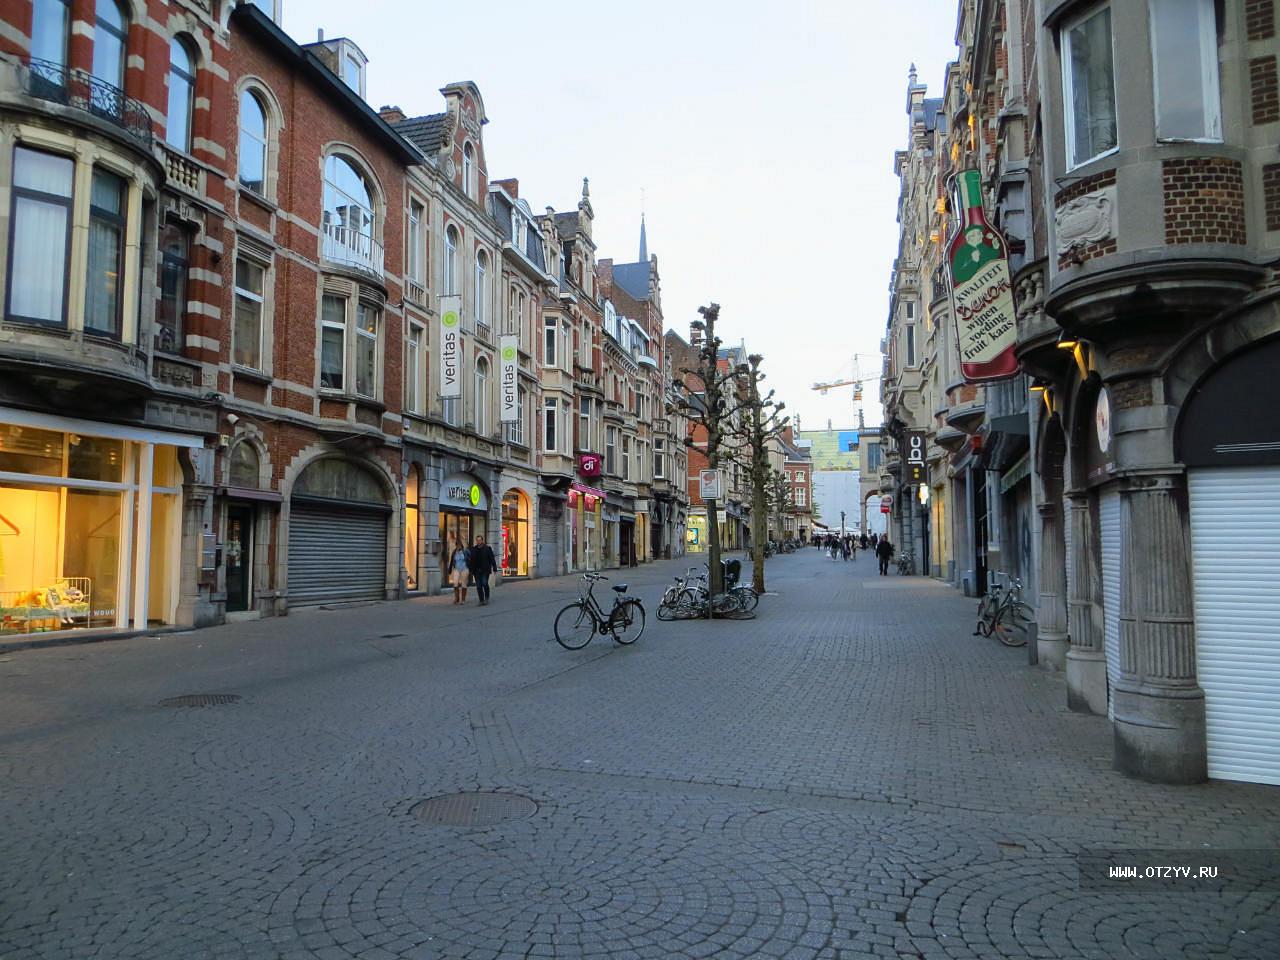 город мехелен в бельгии